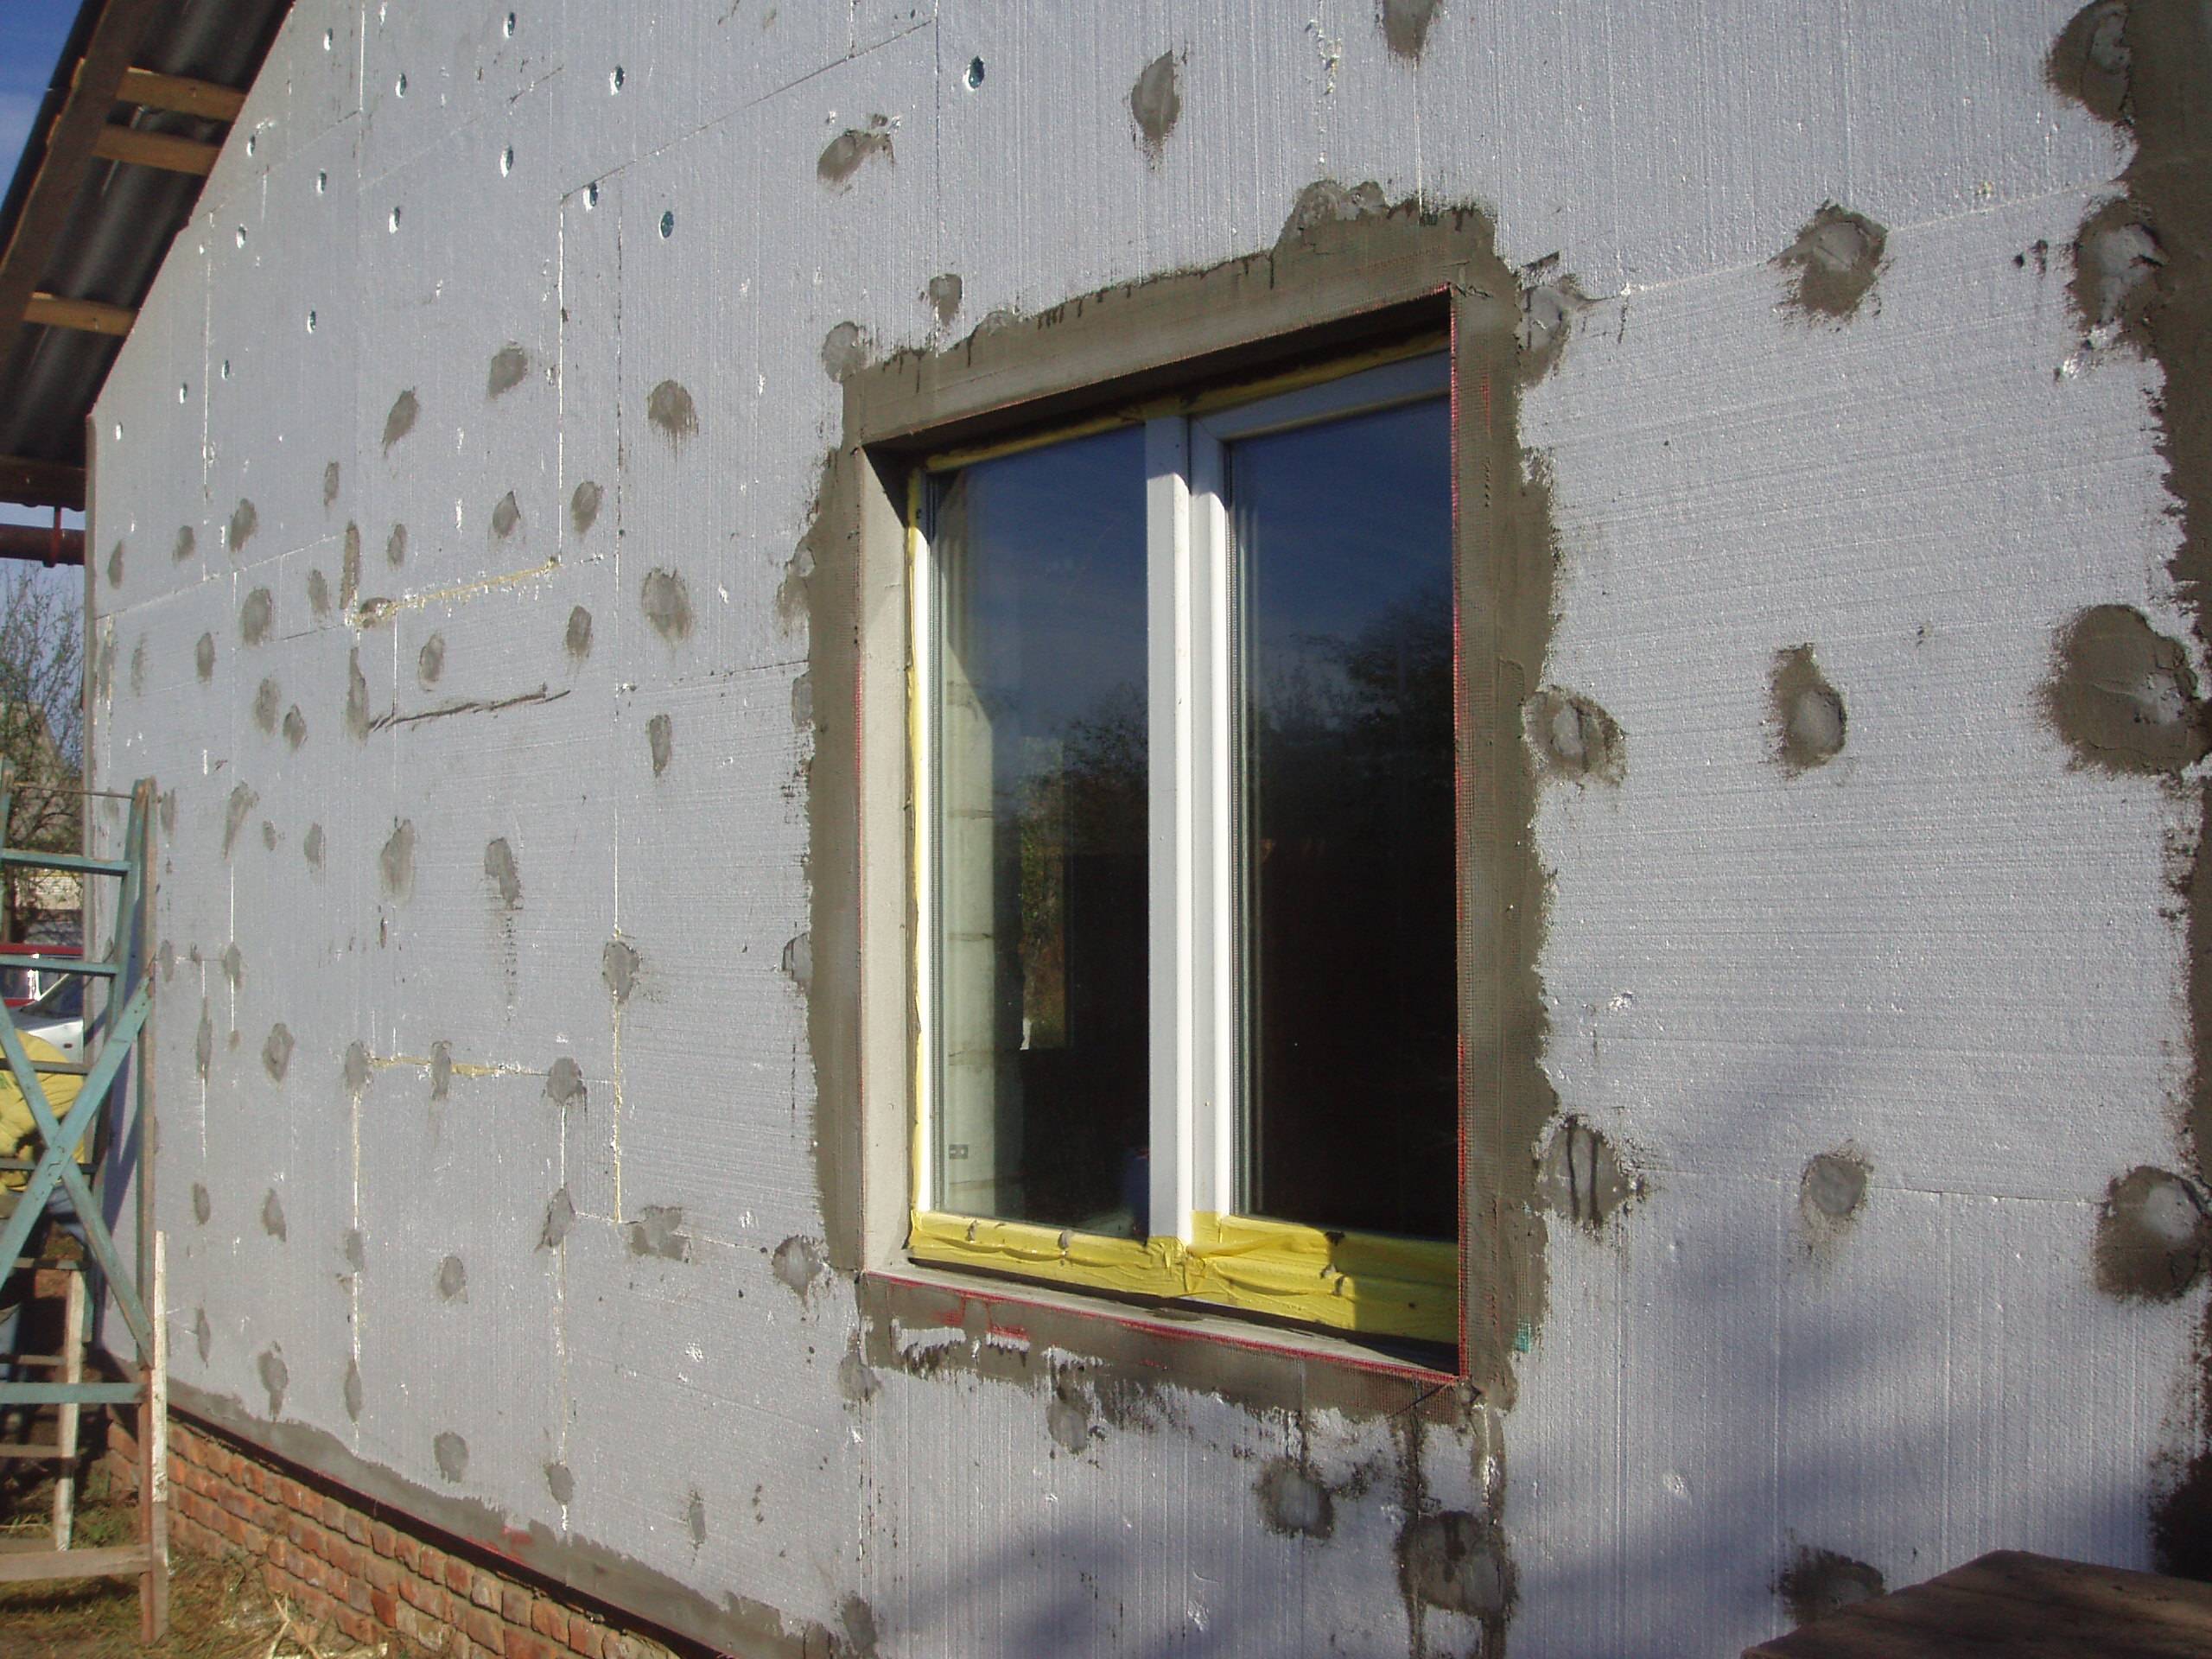 Утепление бетонных стен снаружи и внутри: материалы для теплоизоляции .